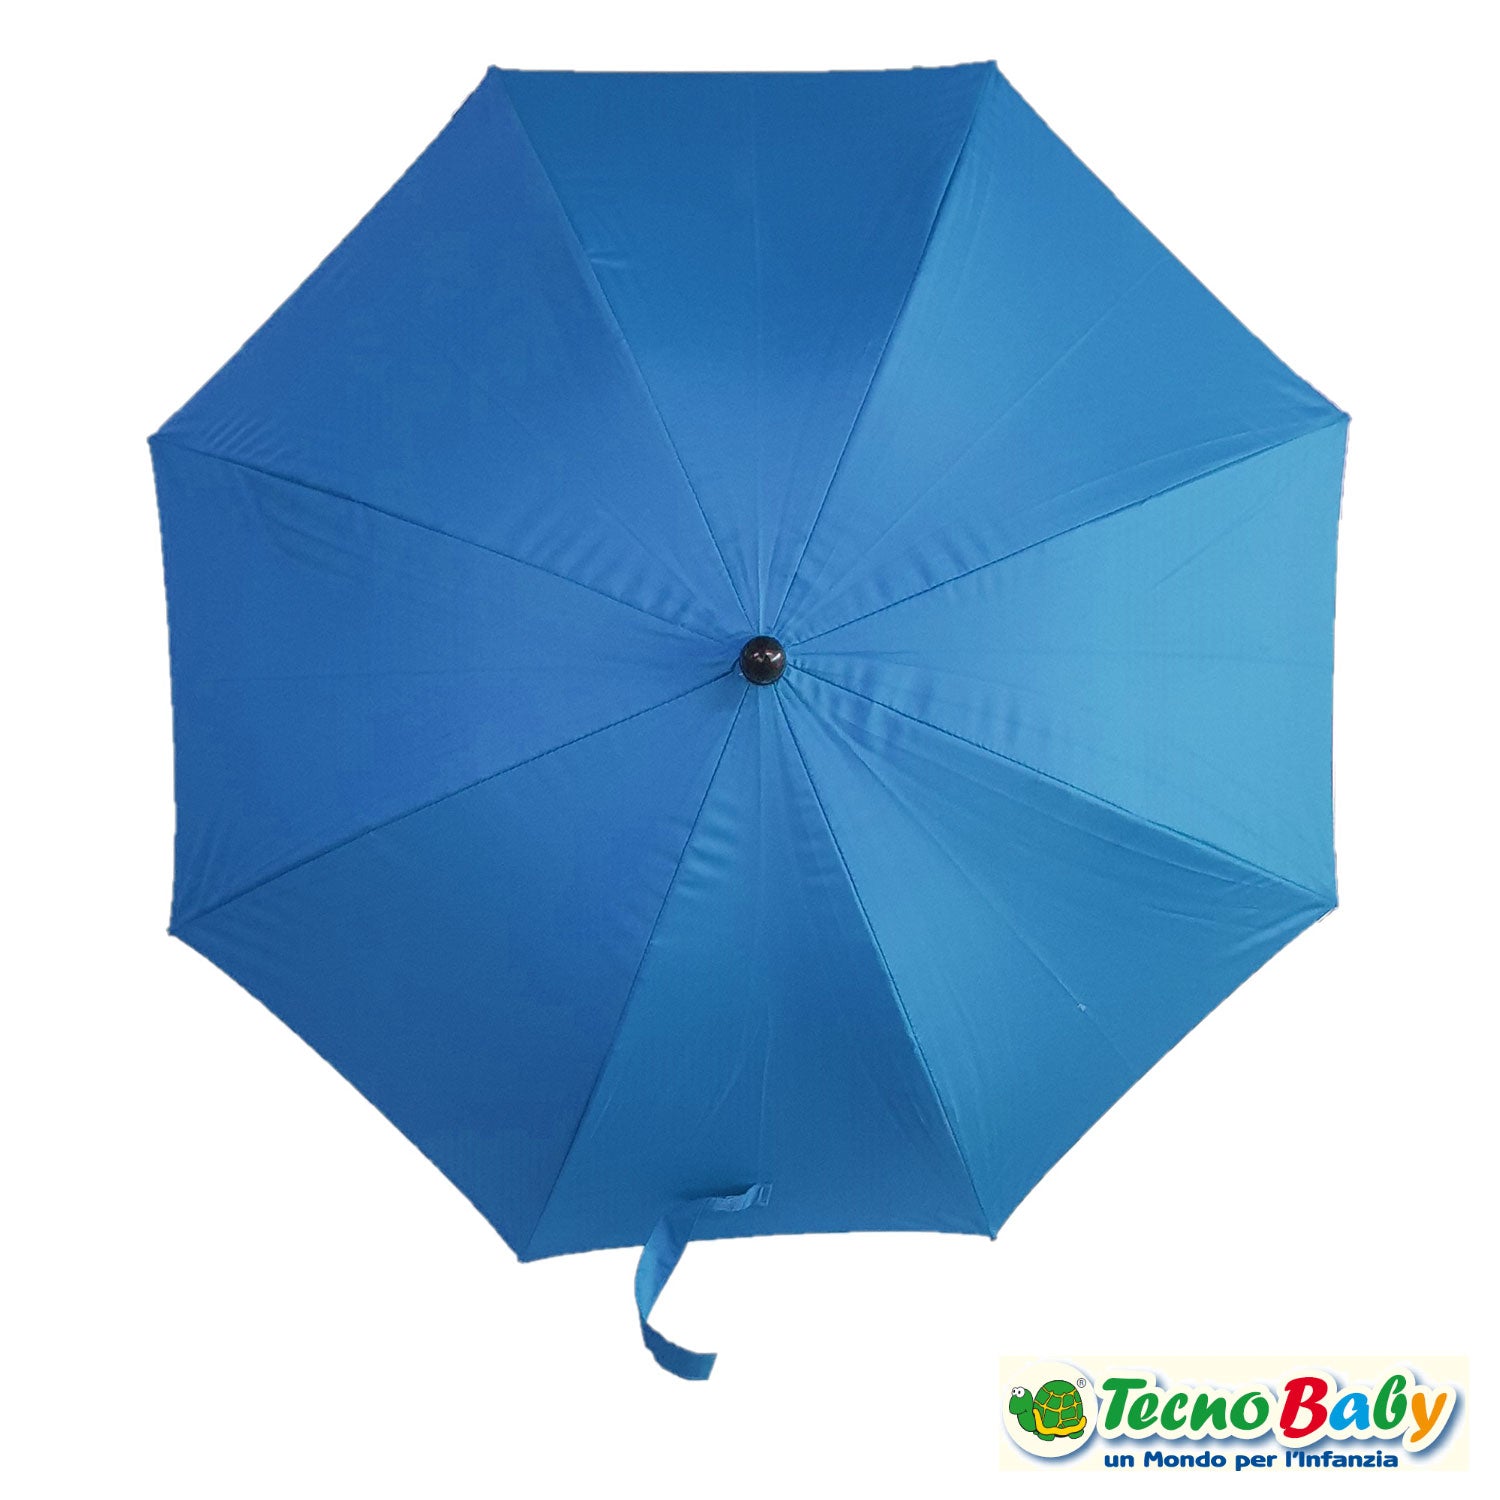 Tecnobaby - Ombrellino parasole universale per passeggino